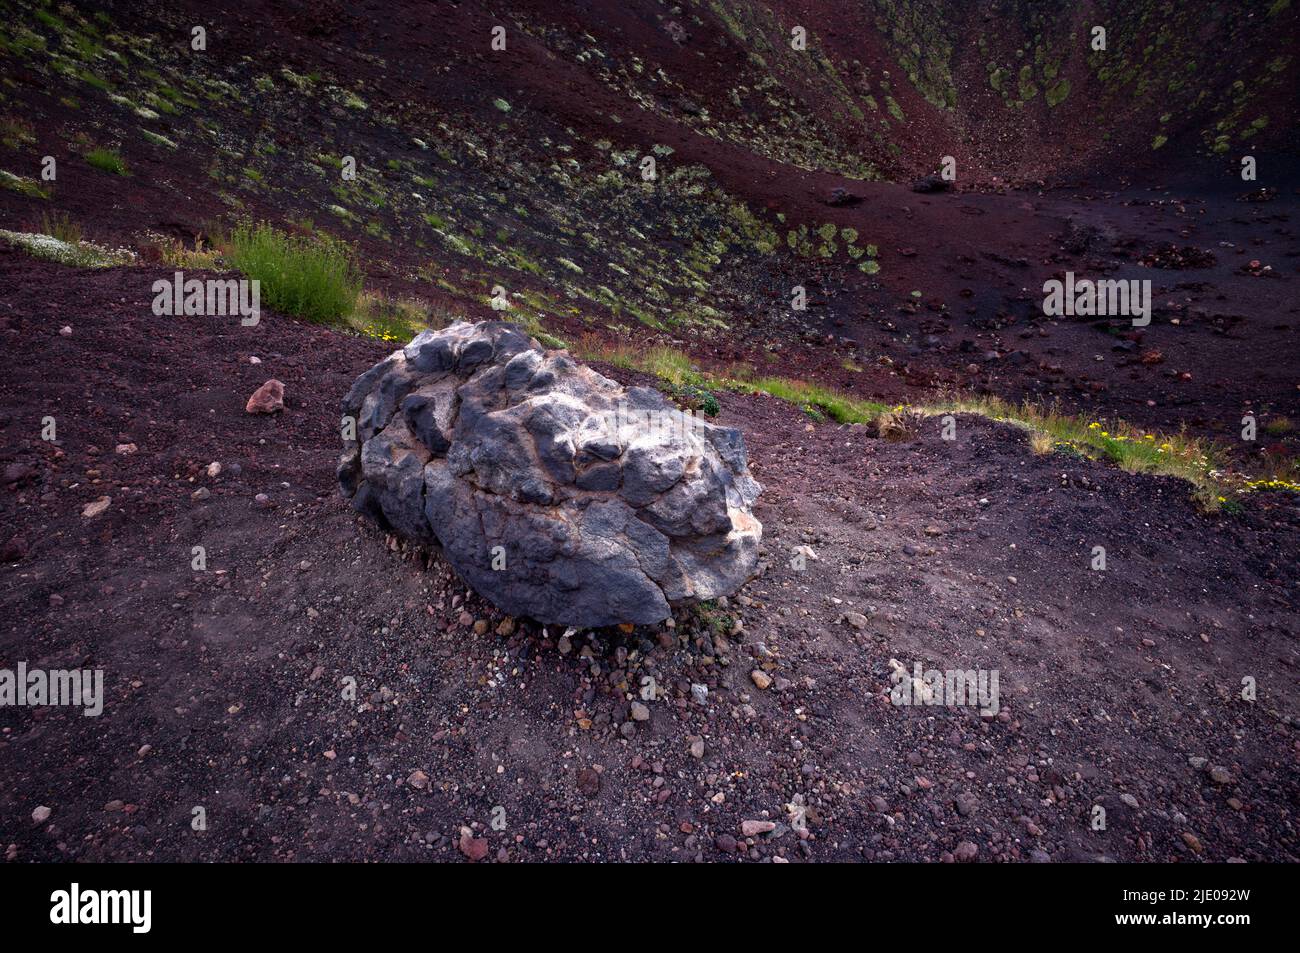 Red lava stones, volcanic soil, Crateri crater Silvestri, Etna volcano, Sicily, Italy Stock Photo